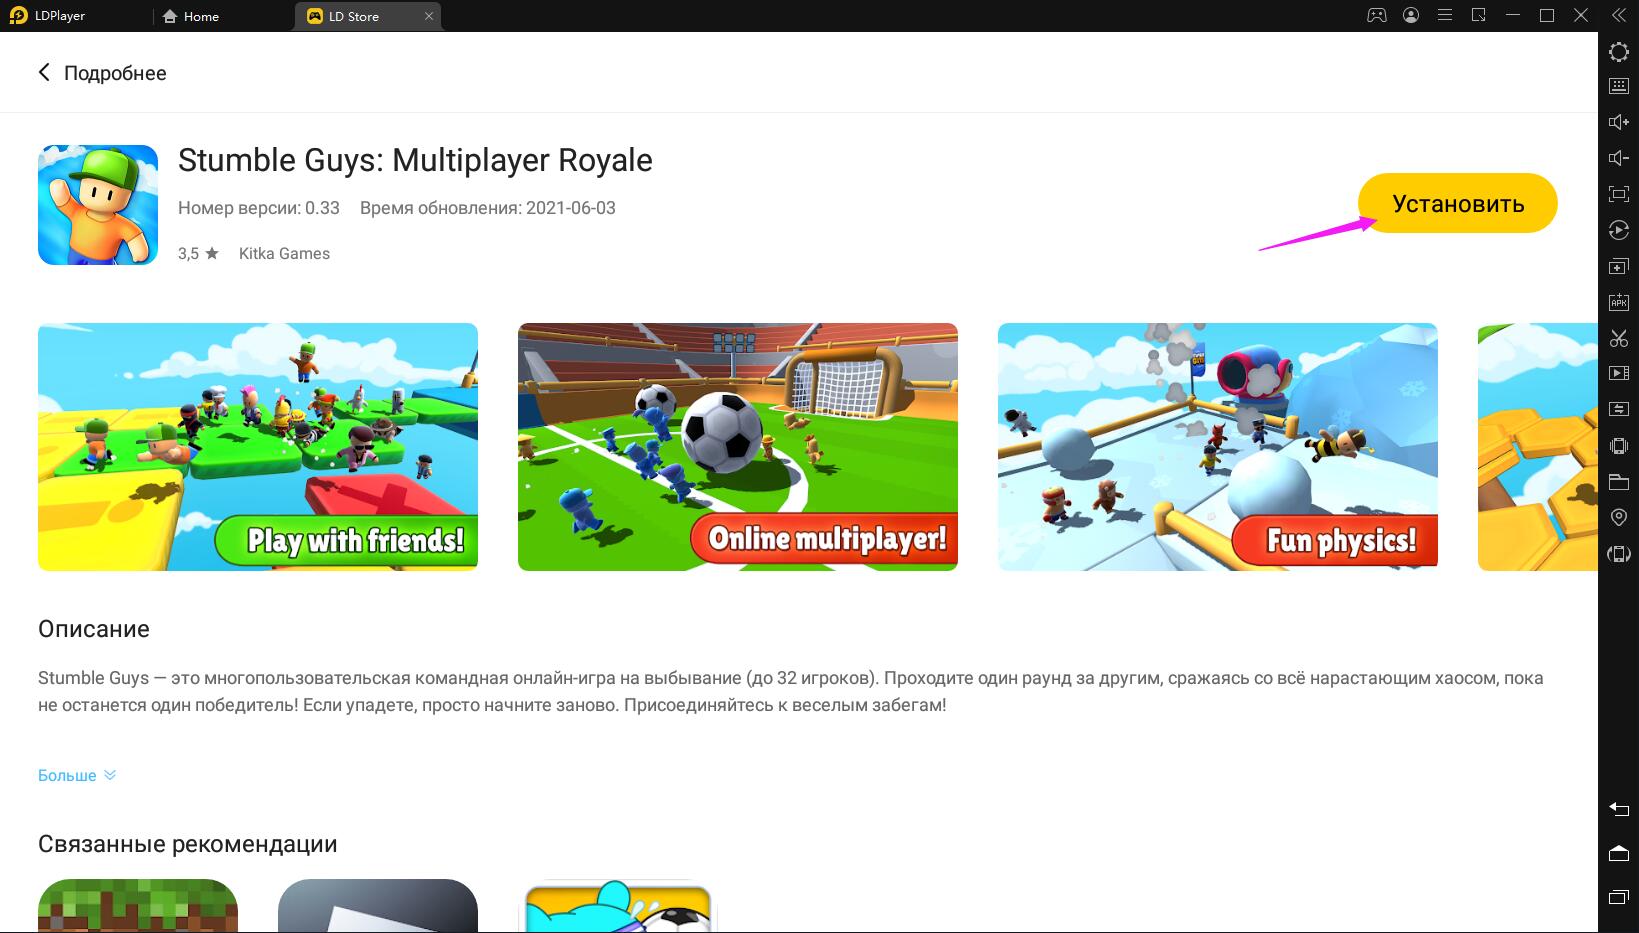 Играть в Stumble Guys: Multiplayer Royale бесплатно на ПК